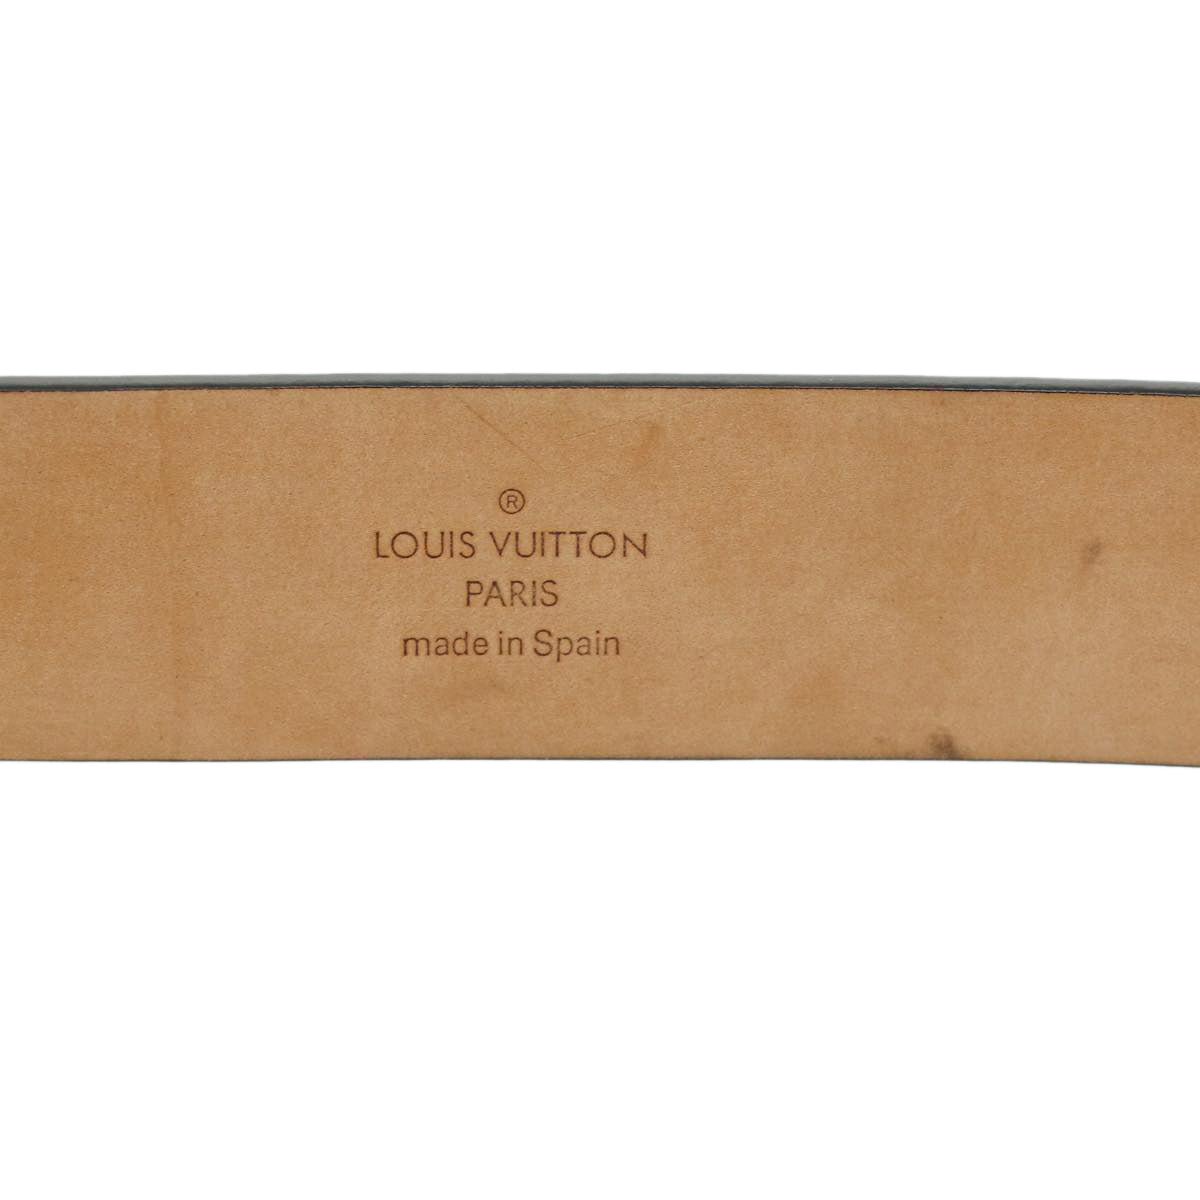 LOUIS VUITTON Mountain & bamboo Japanese style Ceinture Belt Leather Black ro525